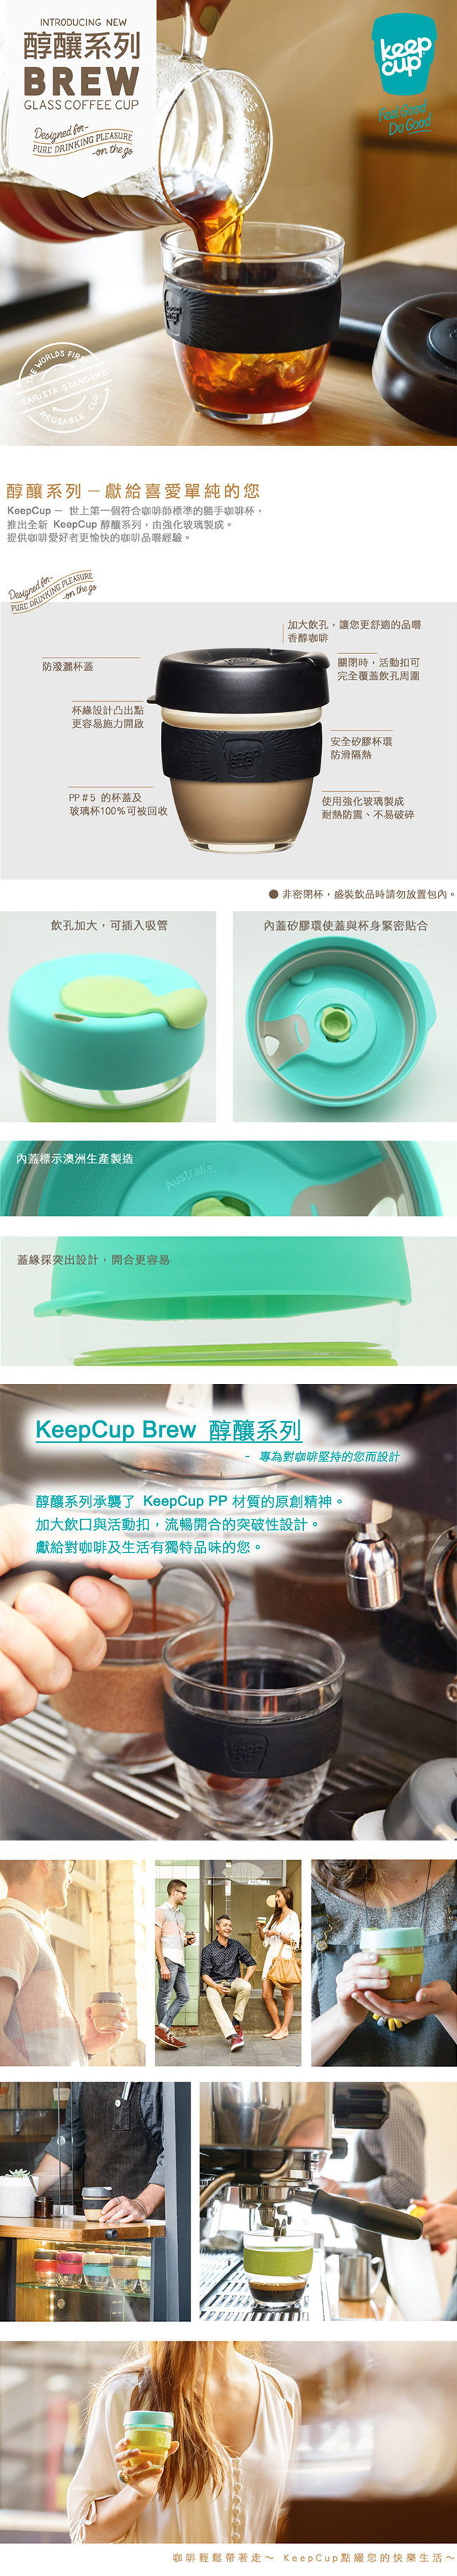 KeepCup 隨手咖啡杯 醇釀系列 M 清新